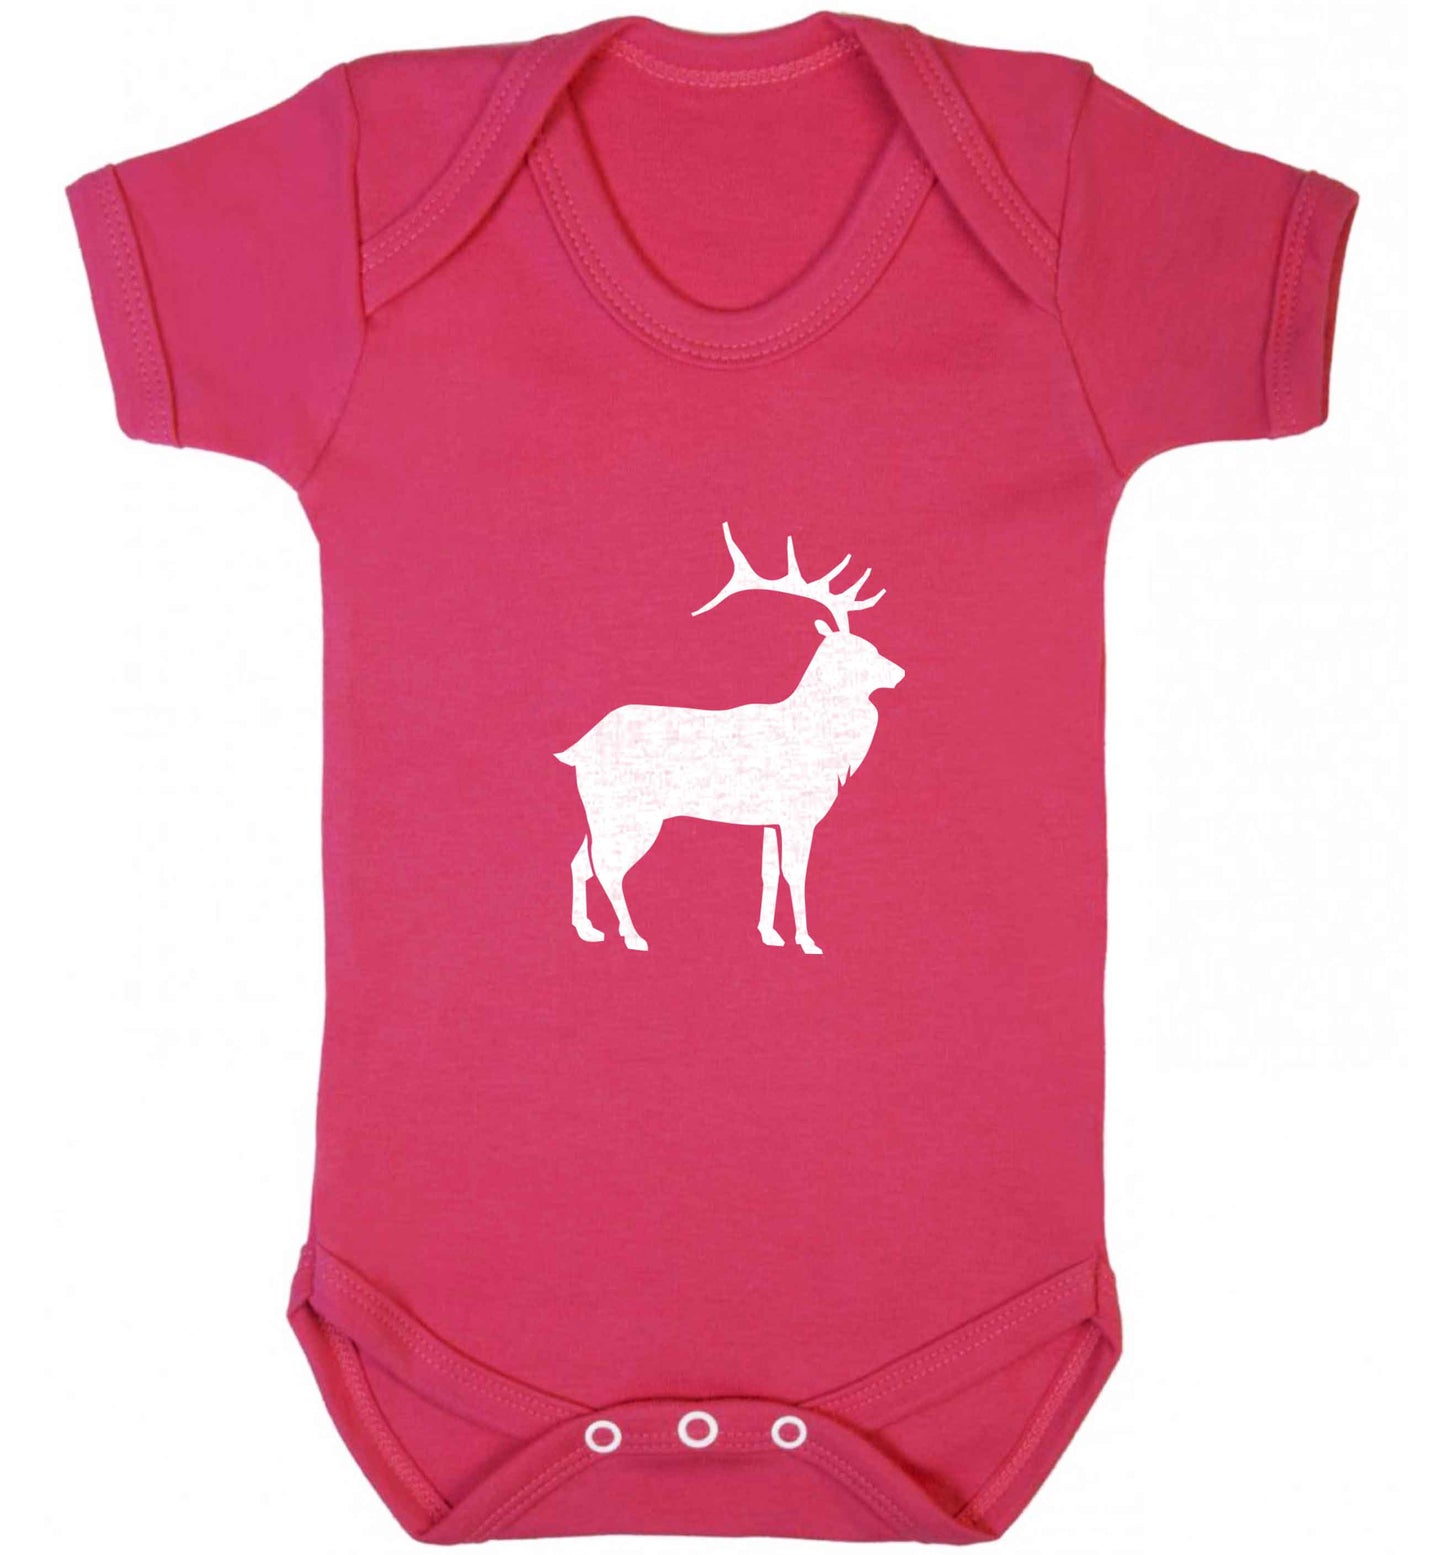 Green stag baby vest dark pink 18-24 months